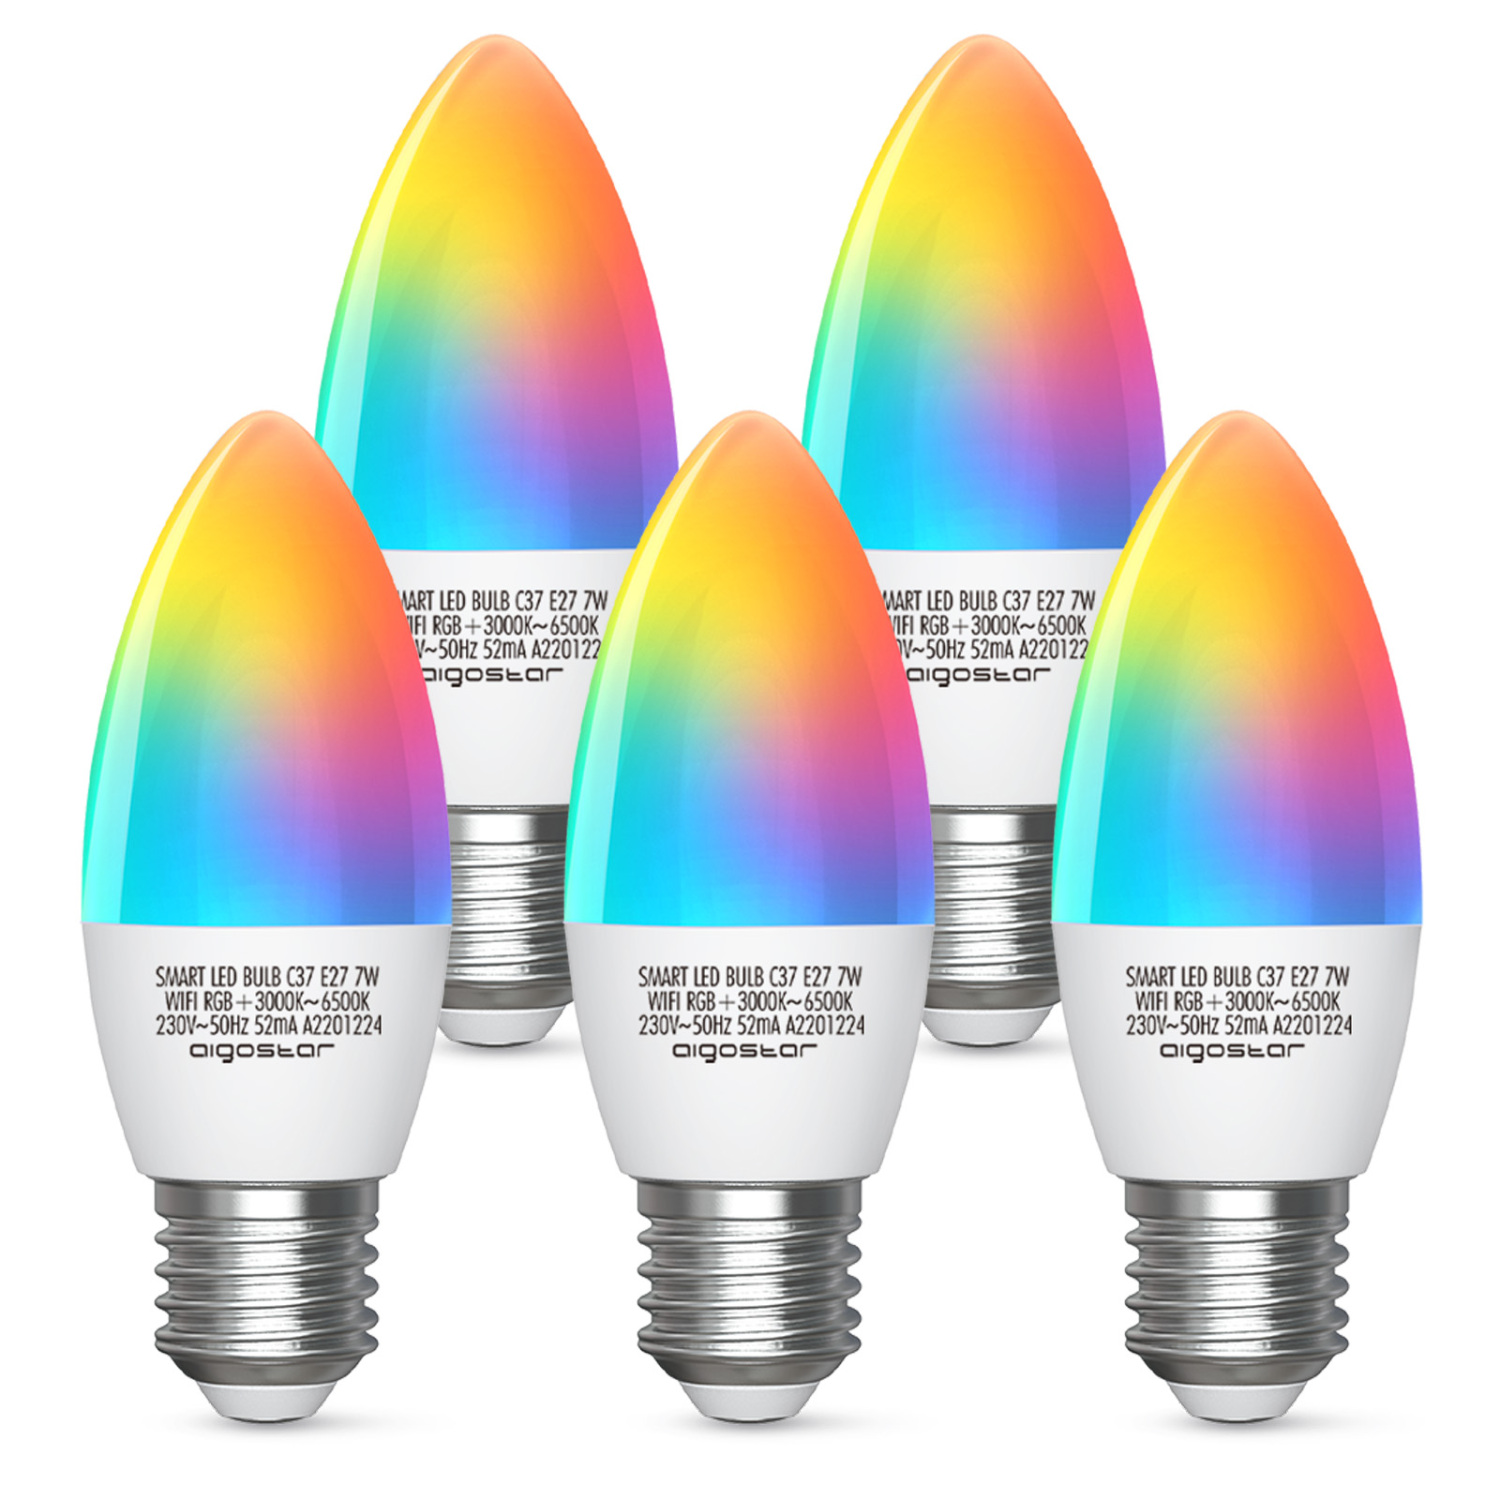 Aigostar Alexa Glühbirnen E27 Wlan Smart LED-Lampe, 7W Mehrfarbige Dimmbare , App Steuern Kompatibel mit Alexa und Google Home, Fernbedienung, Sprachsteuerung, kein Hub erforderlich, 2.4GHz (5 Packs)